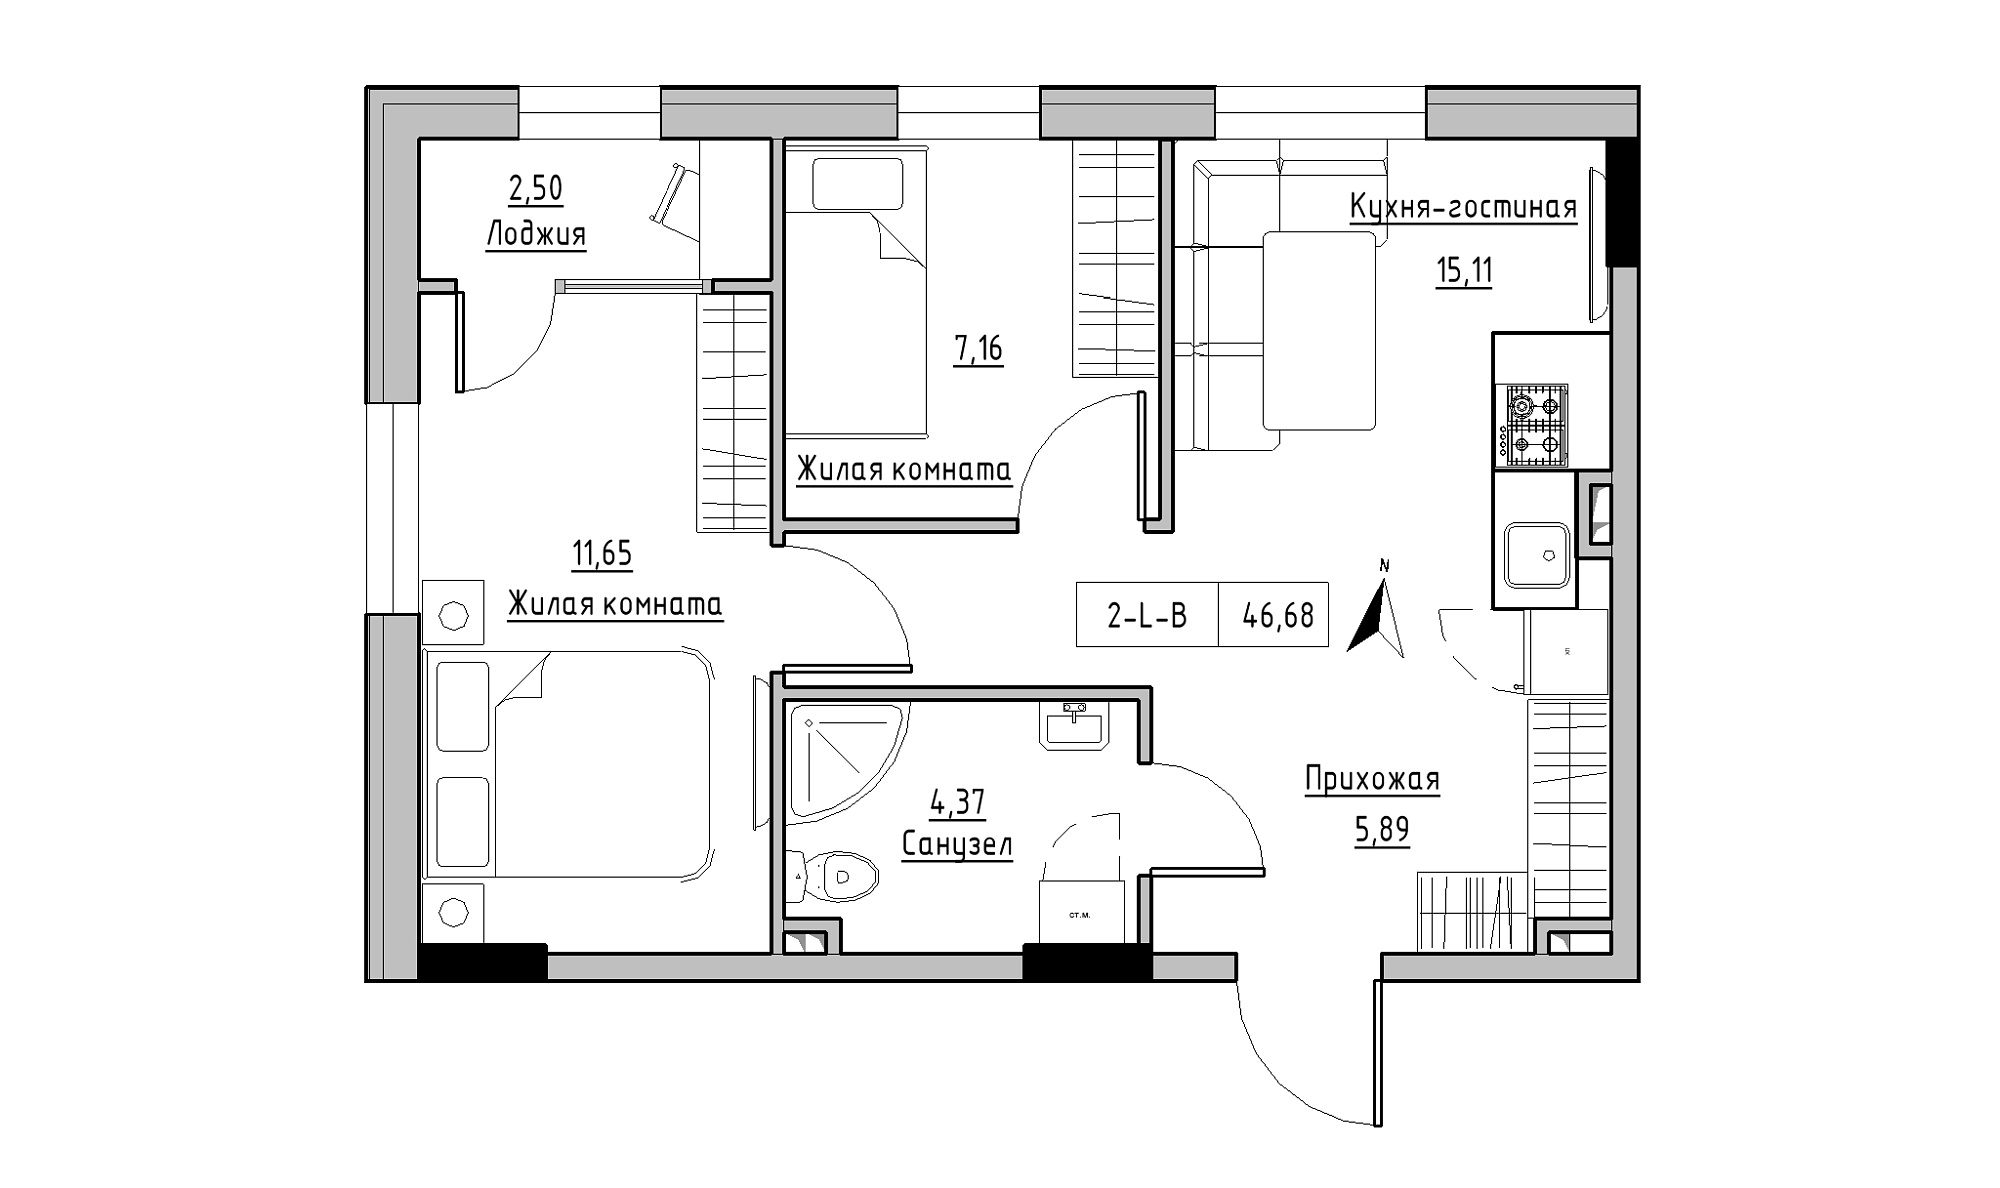 Планування 2-к квартира площею 46.68м2, KS-025-01/0006.